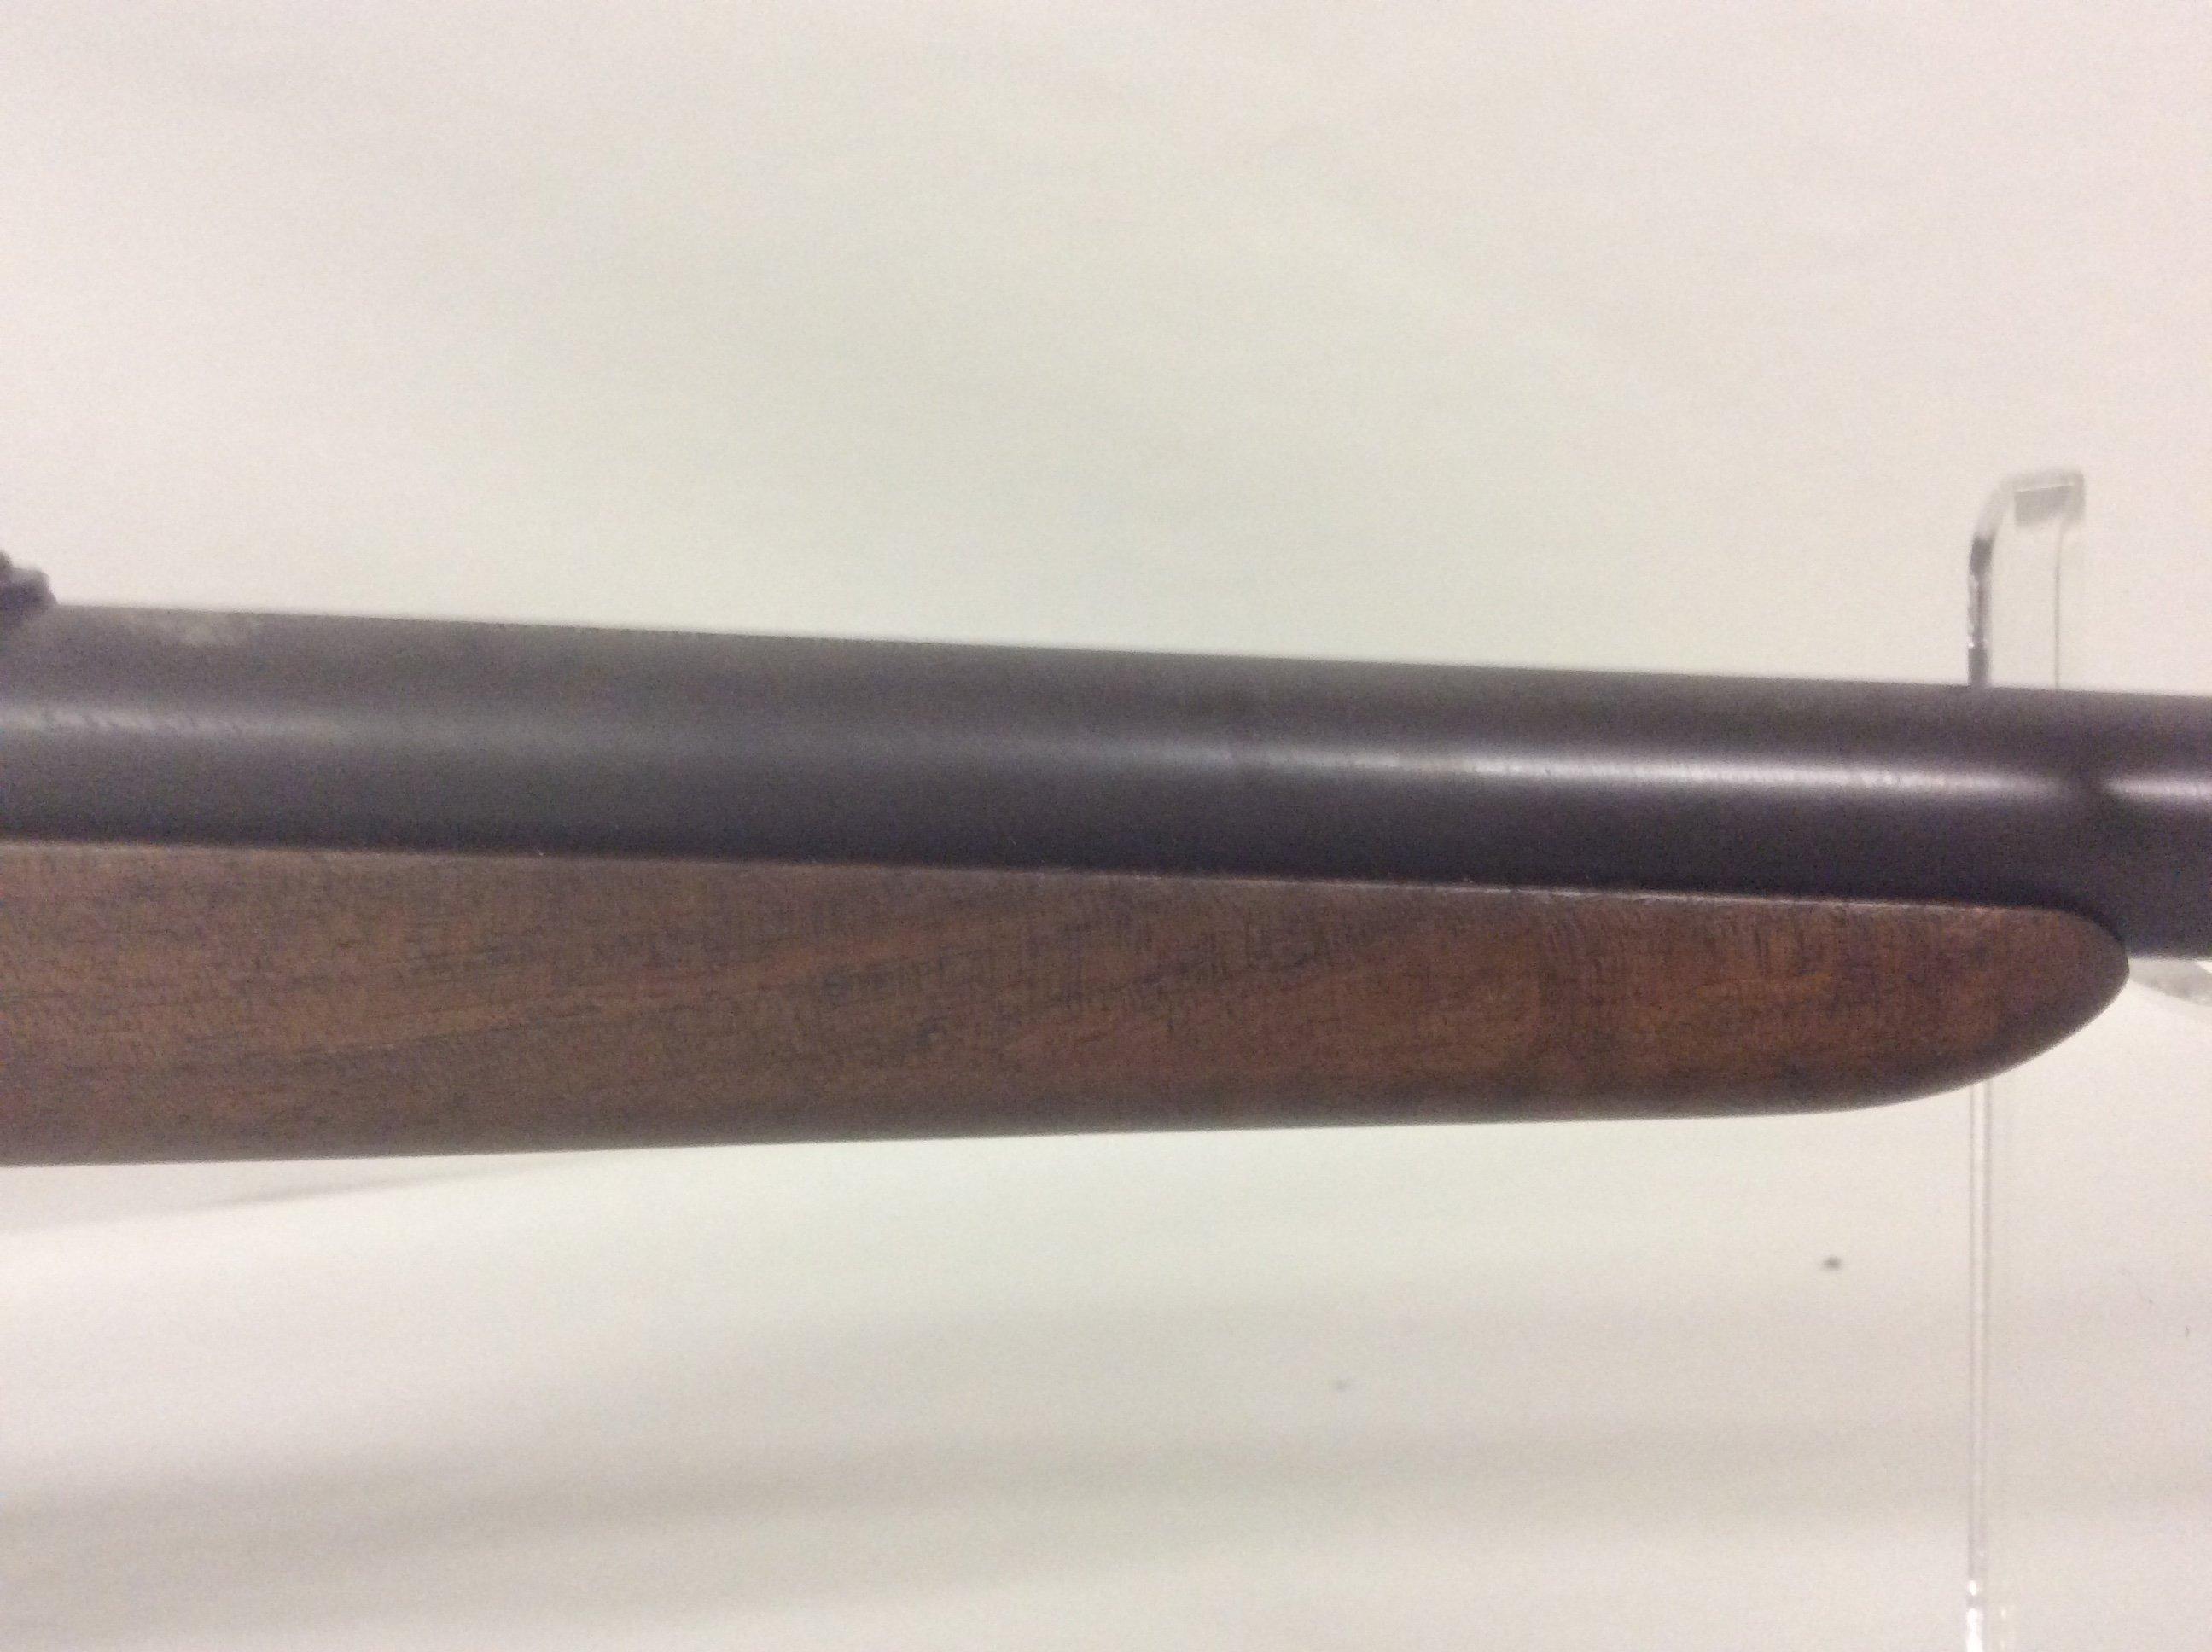 Remington Arms Co. Mod 4 .22 short